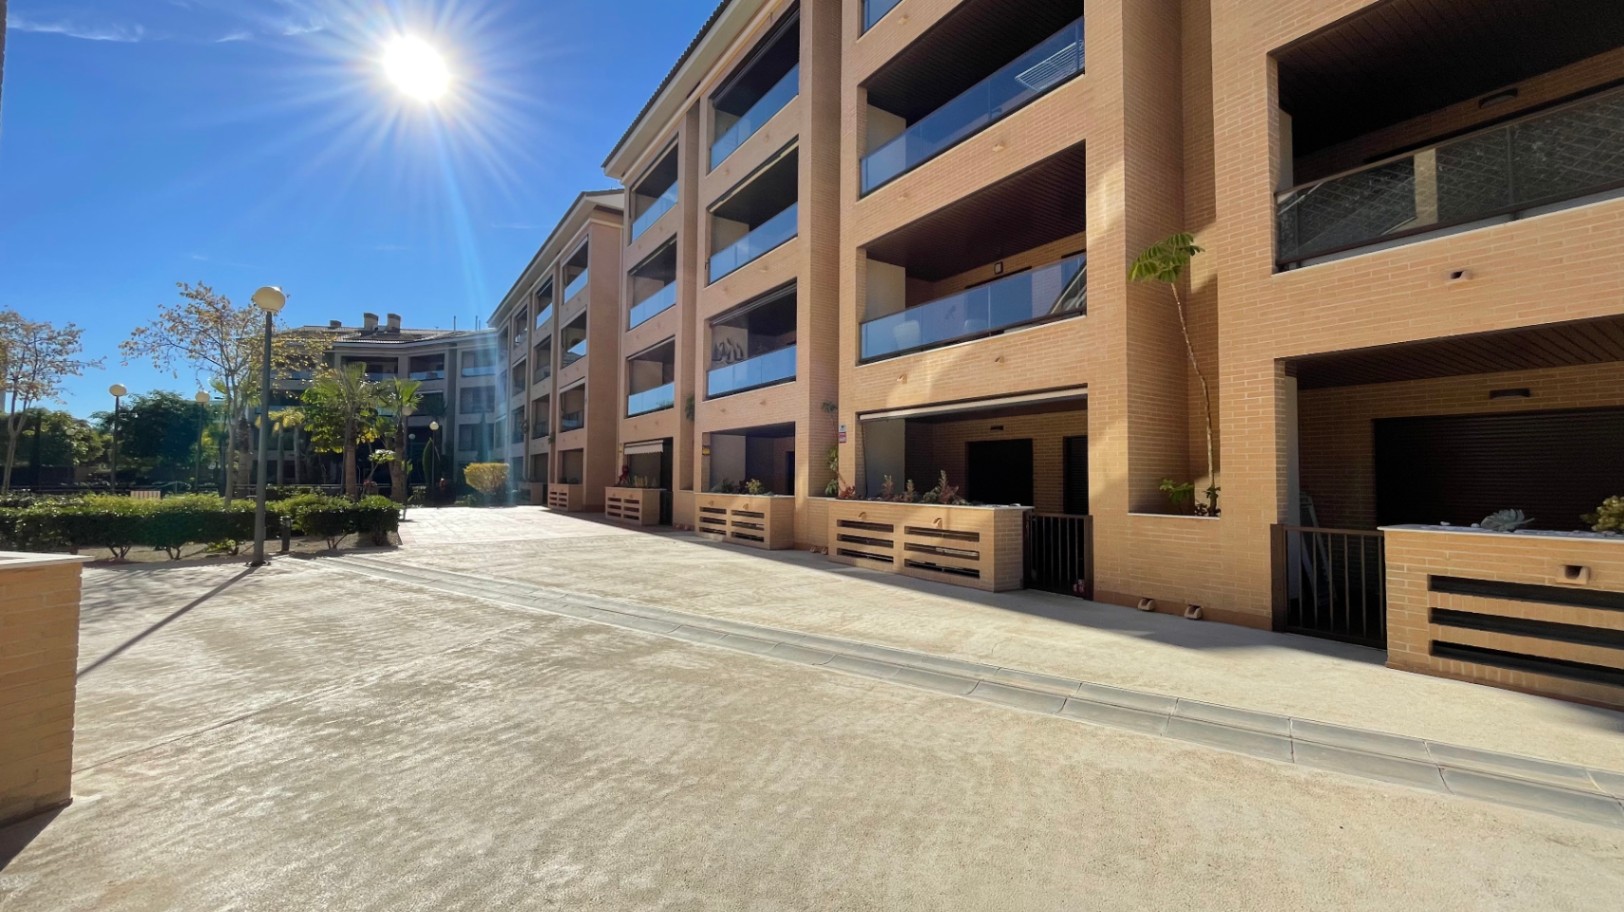 Appartement disponible à la location à court terme - El Arenal Javea